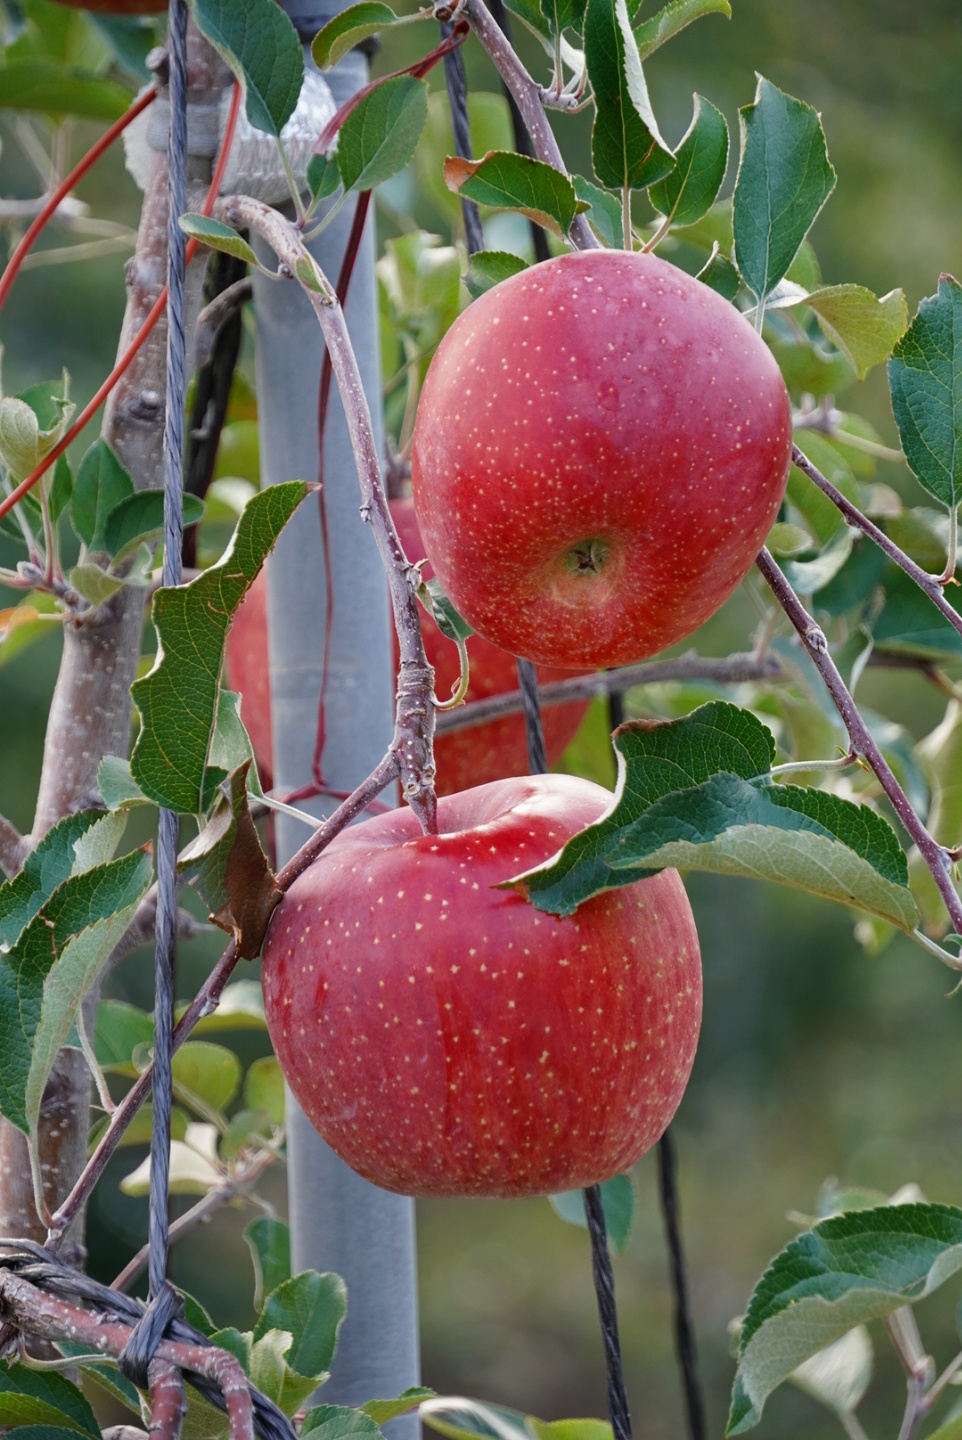 성주 가야산 사과! 맛보장!! 10kg 48-50과 GAP우수농산물